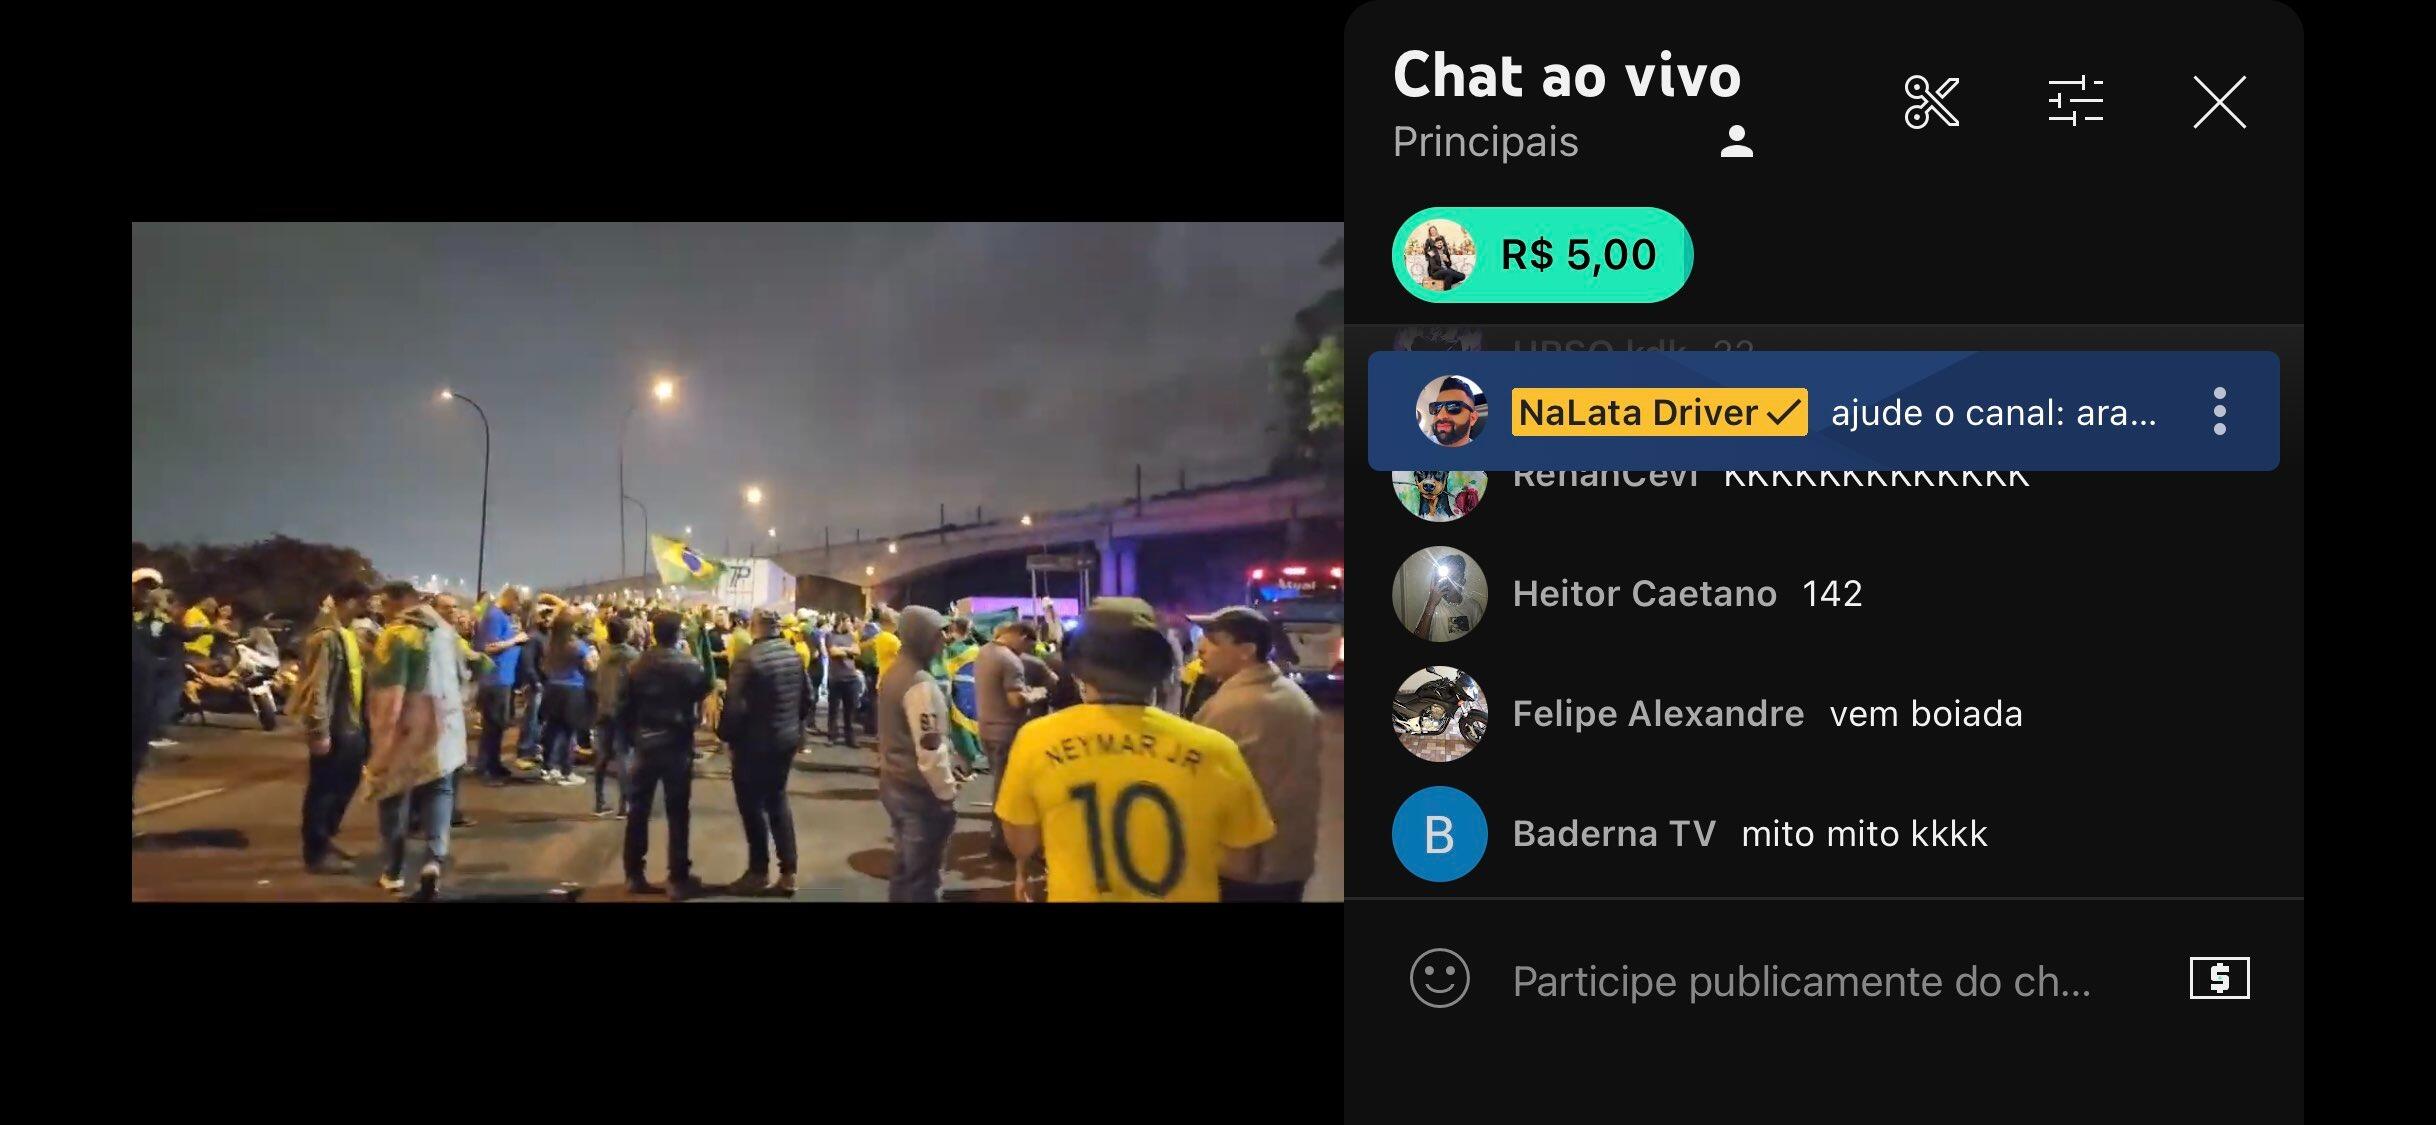 Chat ao vivo prova monetização de vídeos que promovem as manifestações